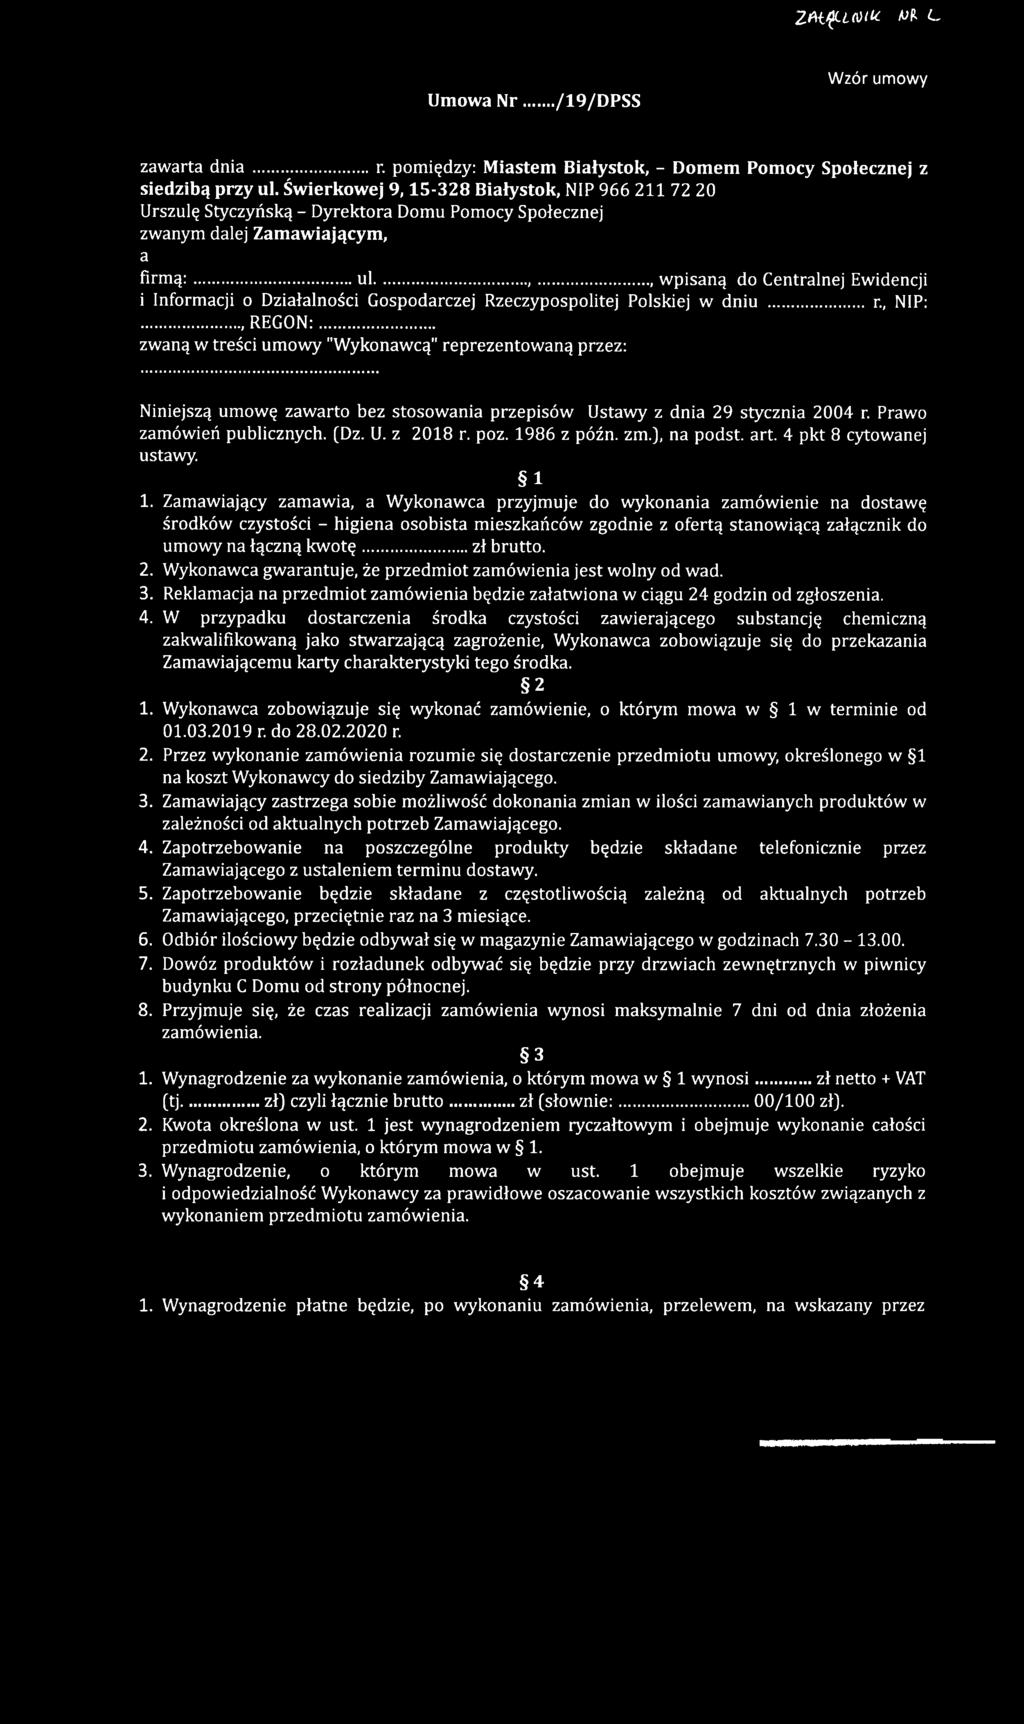 .., wpisaną do Centralnej Ewidencji i Informacji o Działalności Gospodarczej Rzeczypospolitej Polskiej w dniu... r., NIP:..., REGON:.